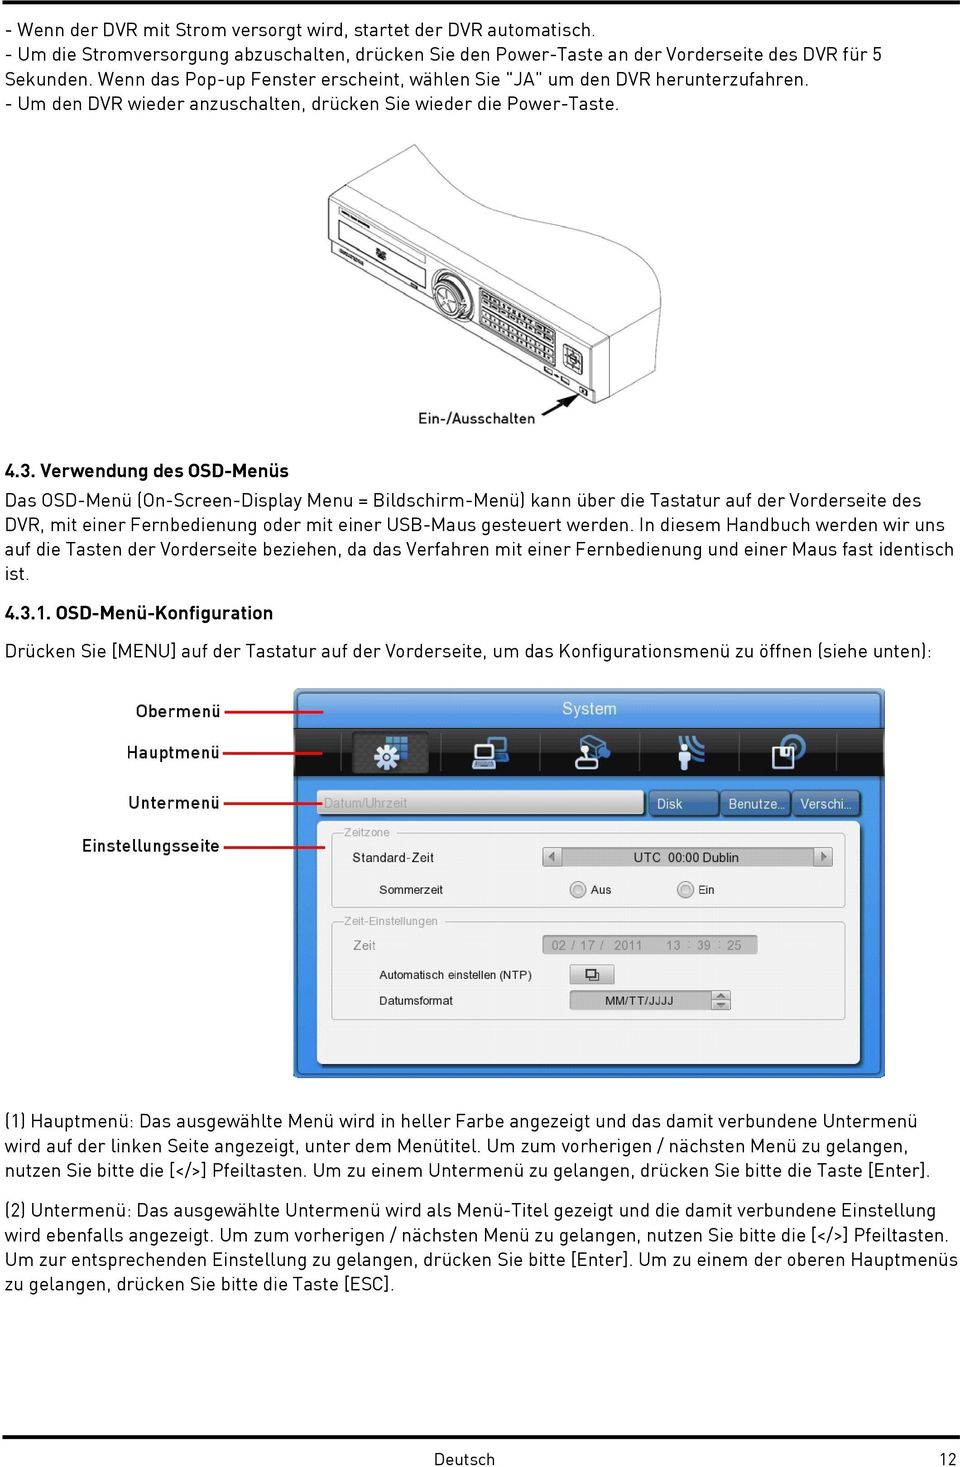 Verwendung des OSD-Menüs Das OSD-Menü (On-Screen-Display Menu = Bildschirm-Menü) kann über die Tastatur auf der Vorderseite des DVR, mit einer Fernbedienung oder mit einer USB-Maus gesteuert werden.